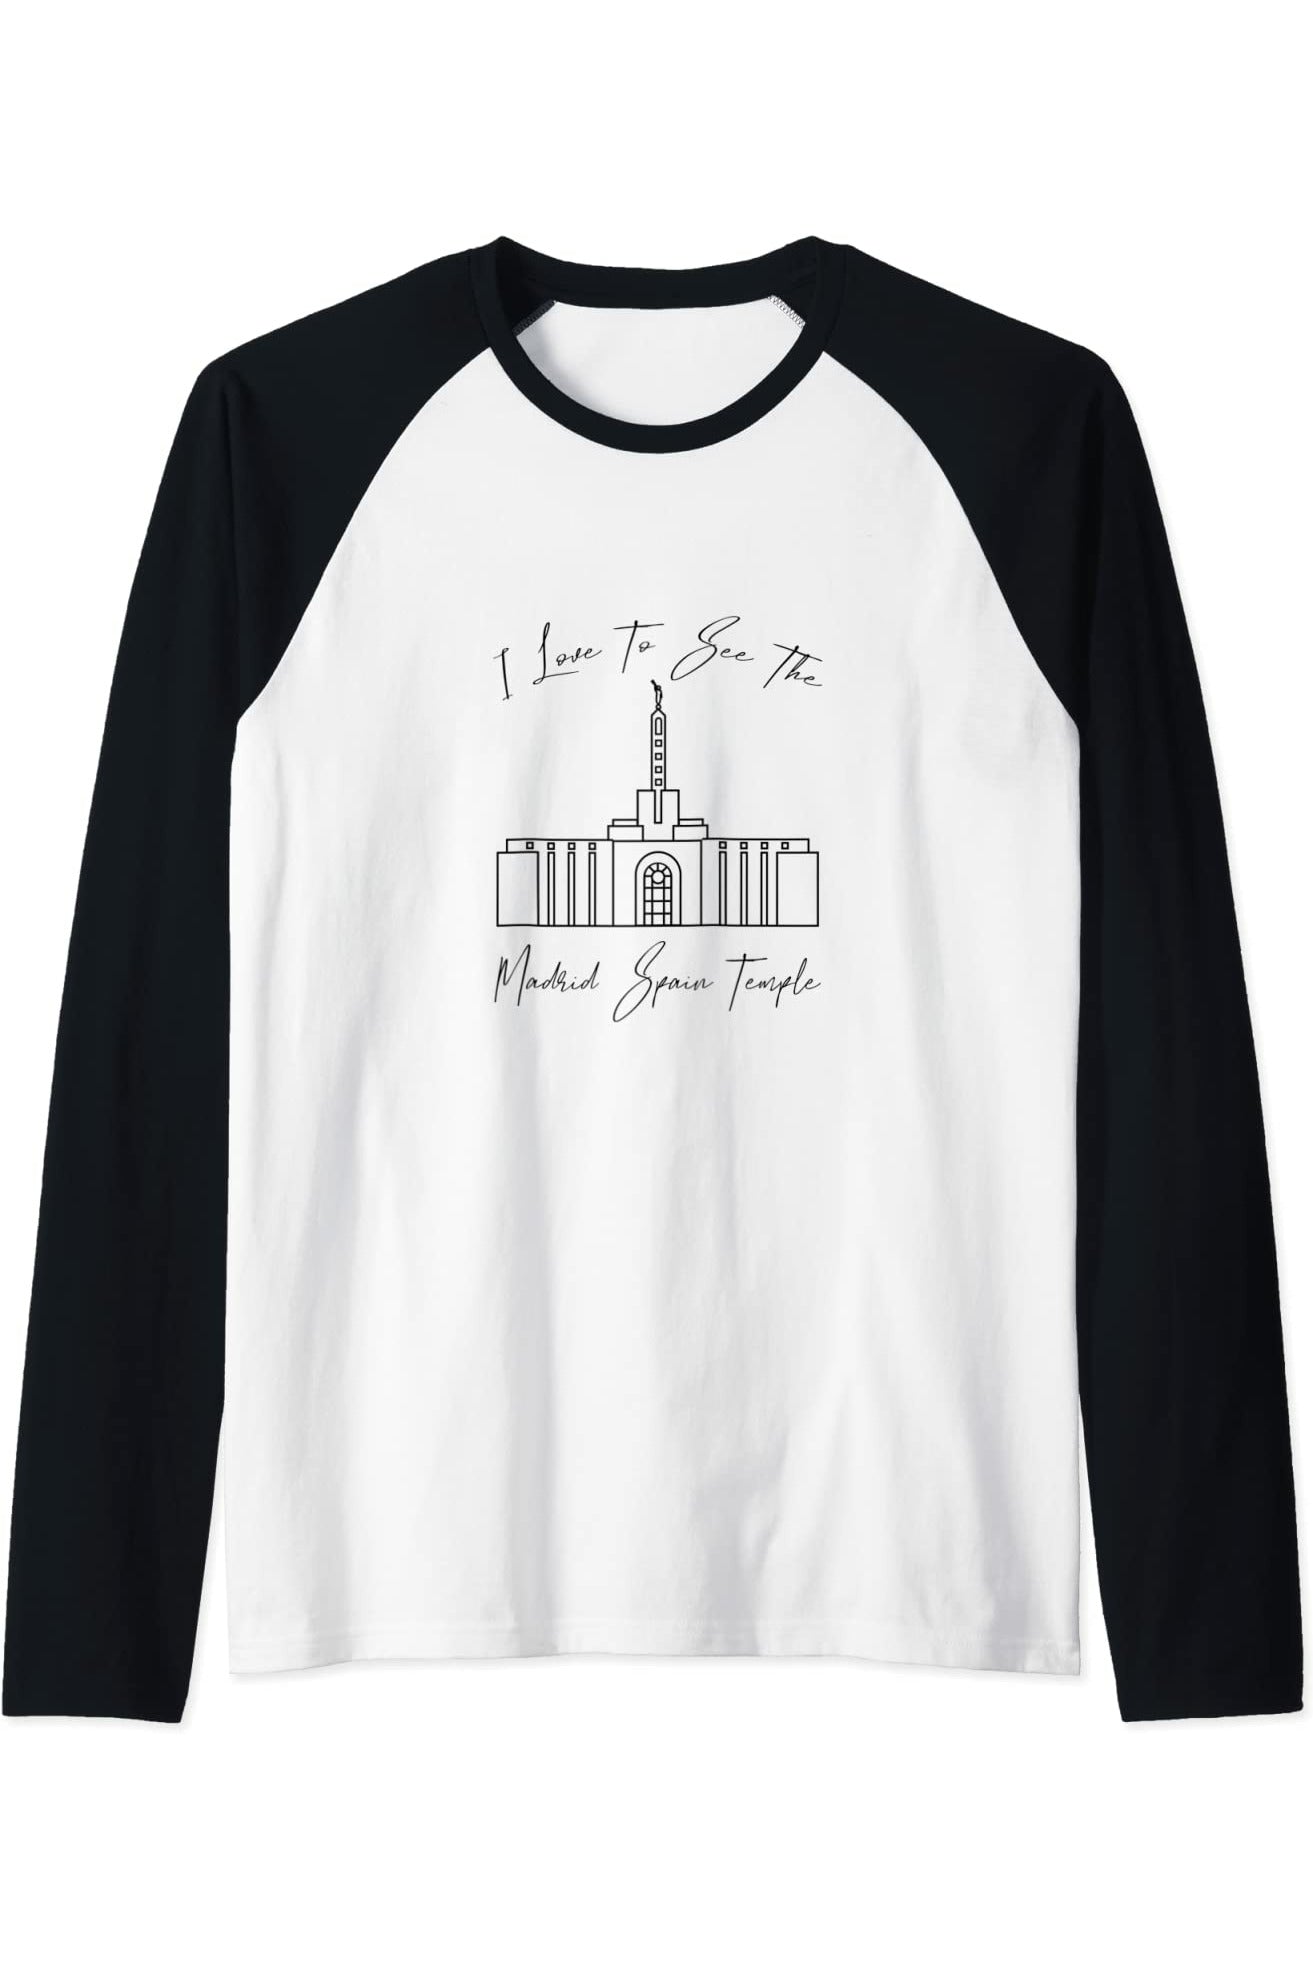 Madrid Spagna Tempio, mi piace vedere il mio tempio, calligrafia Raglan T-Shirt